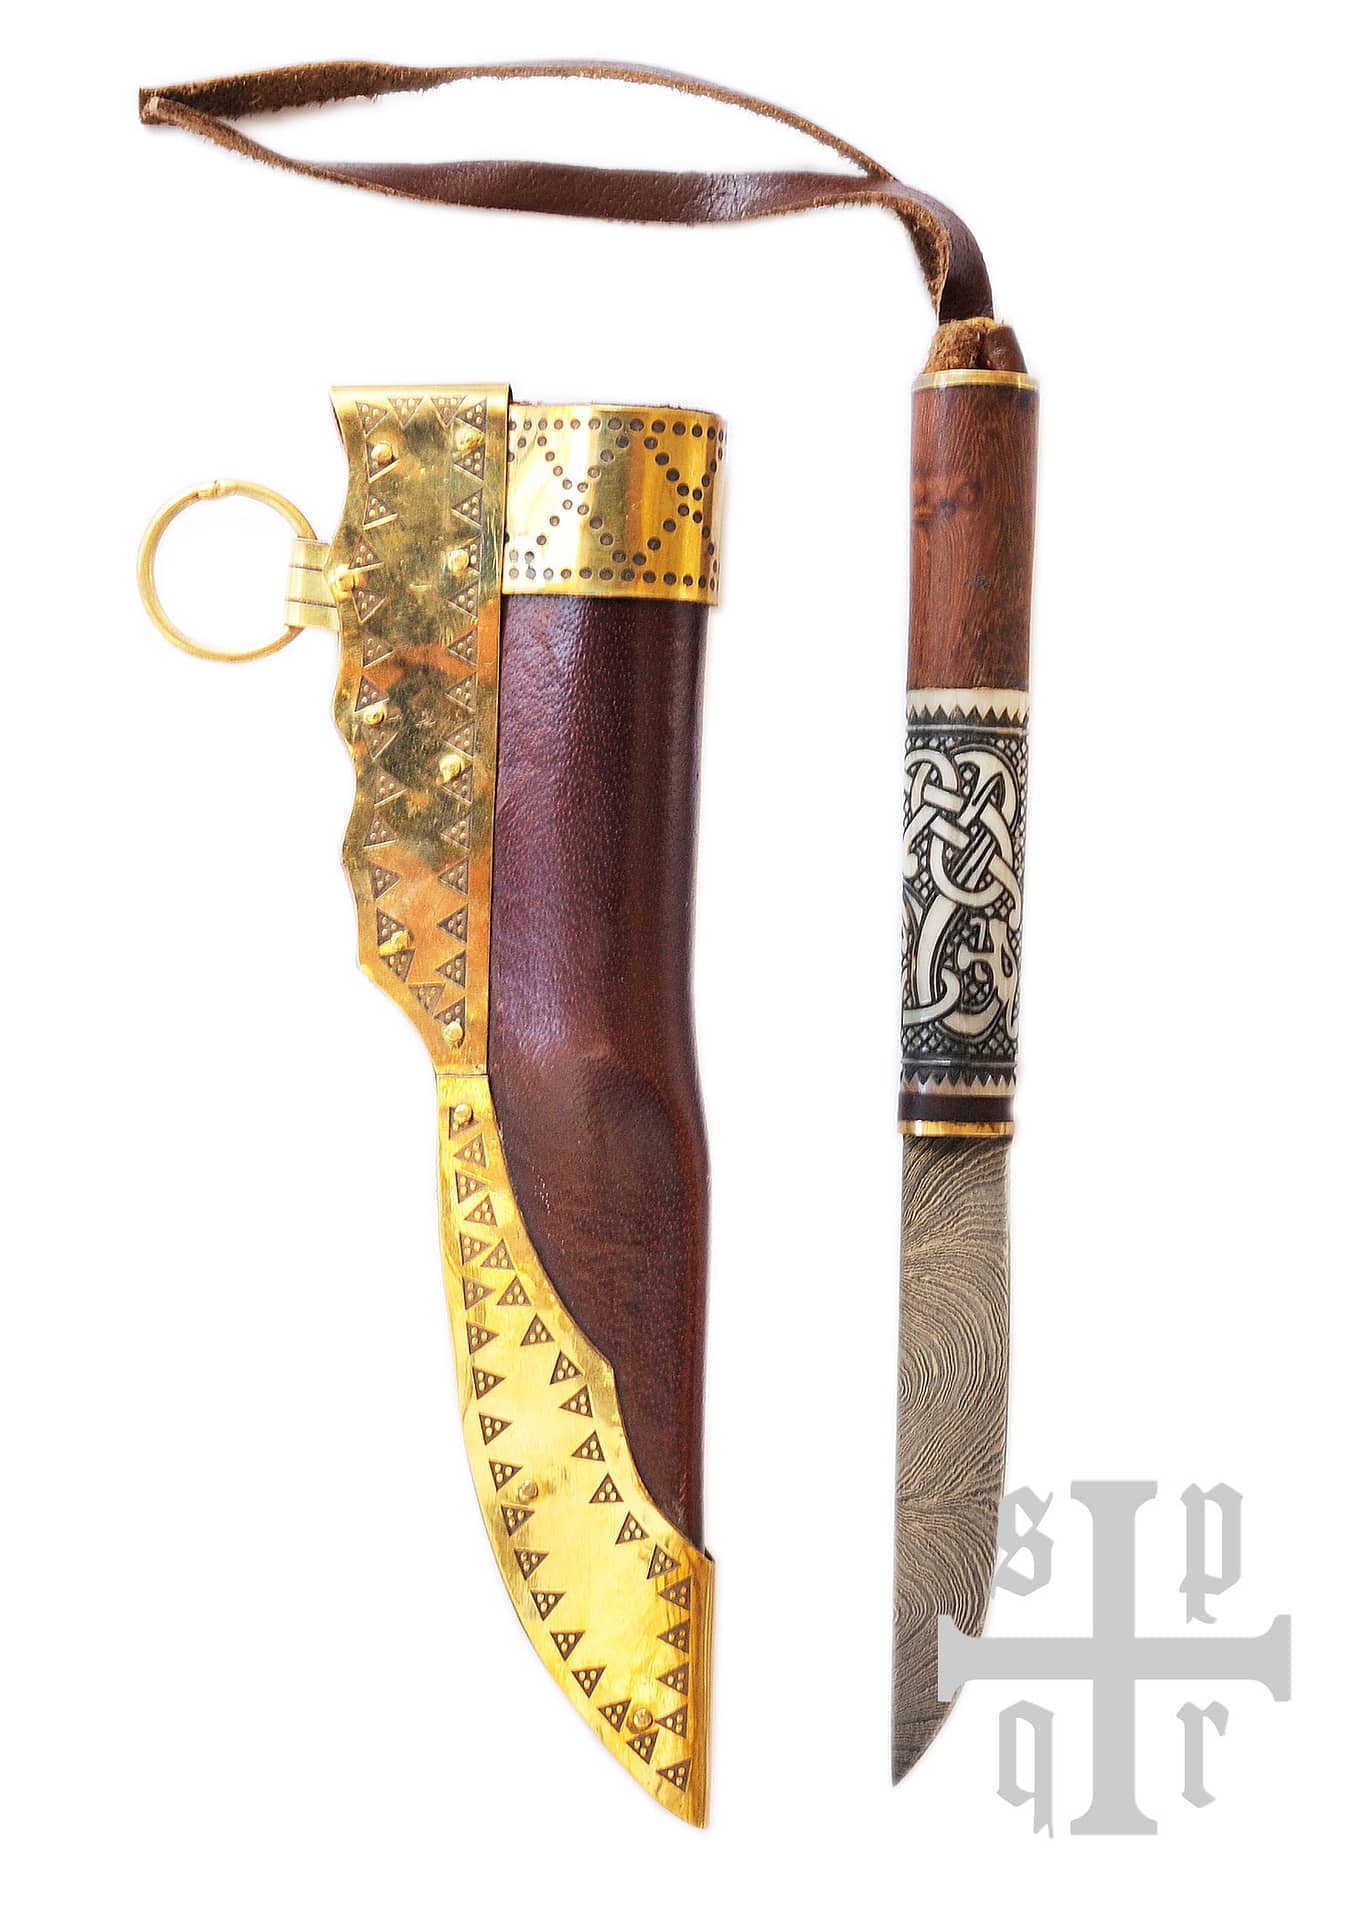 Cuchillo vikingo de acero de Damasco, con serpientes 0364002641 - Espadas y Más